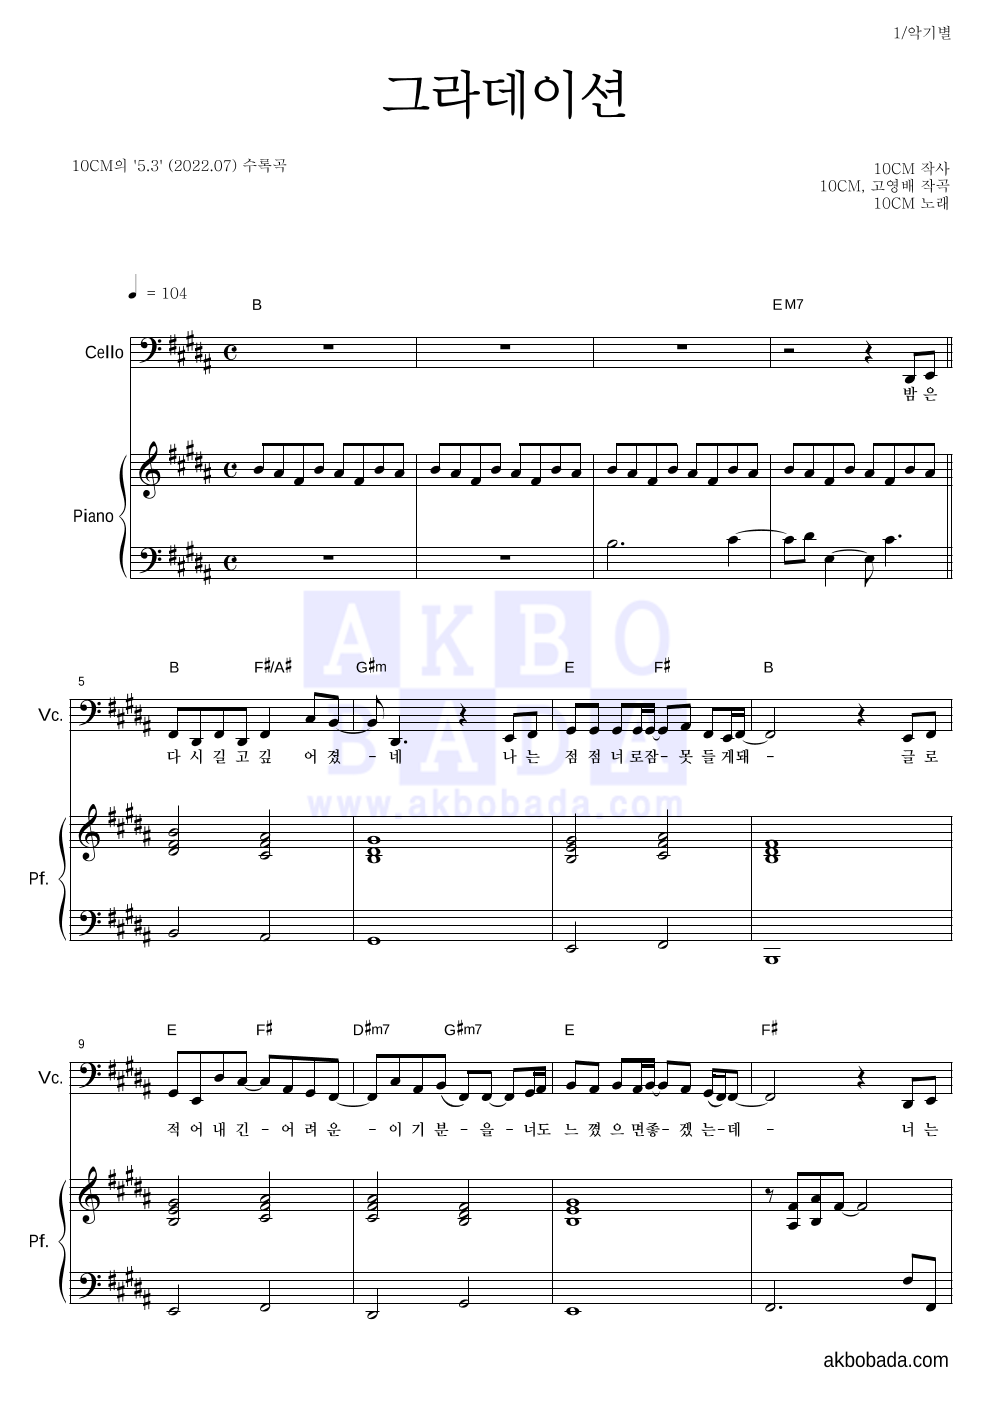 10CM - 그라데이션 첼로&피아노 악보 